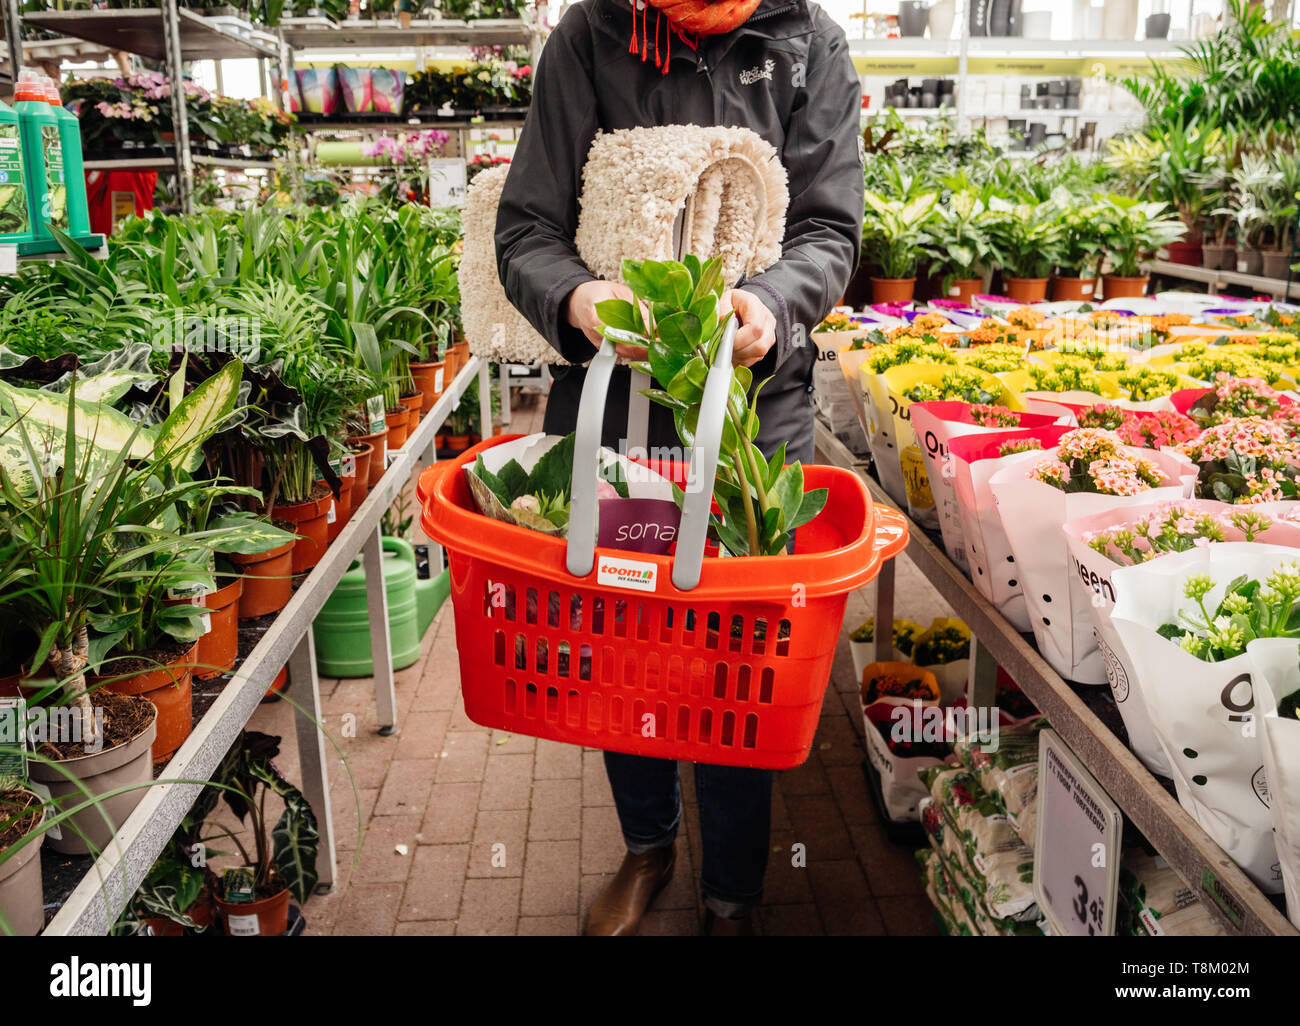 Frankfurt, Deutschland - 13 Apr, 2019: Elegante deutsche Frau kaufen  diverse Blumen und Haushalt Teppiche innen Toom Blumengeschäft Supermarkt  in Deutschland Stockfotografie - Alamy